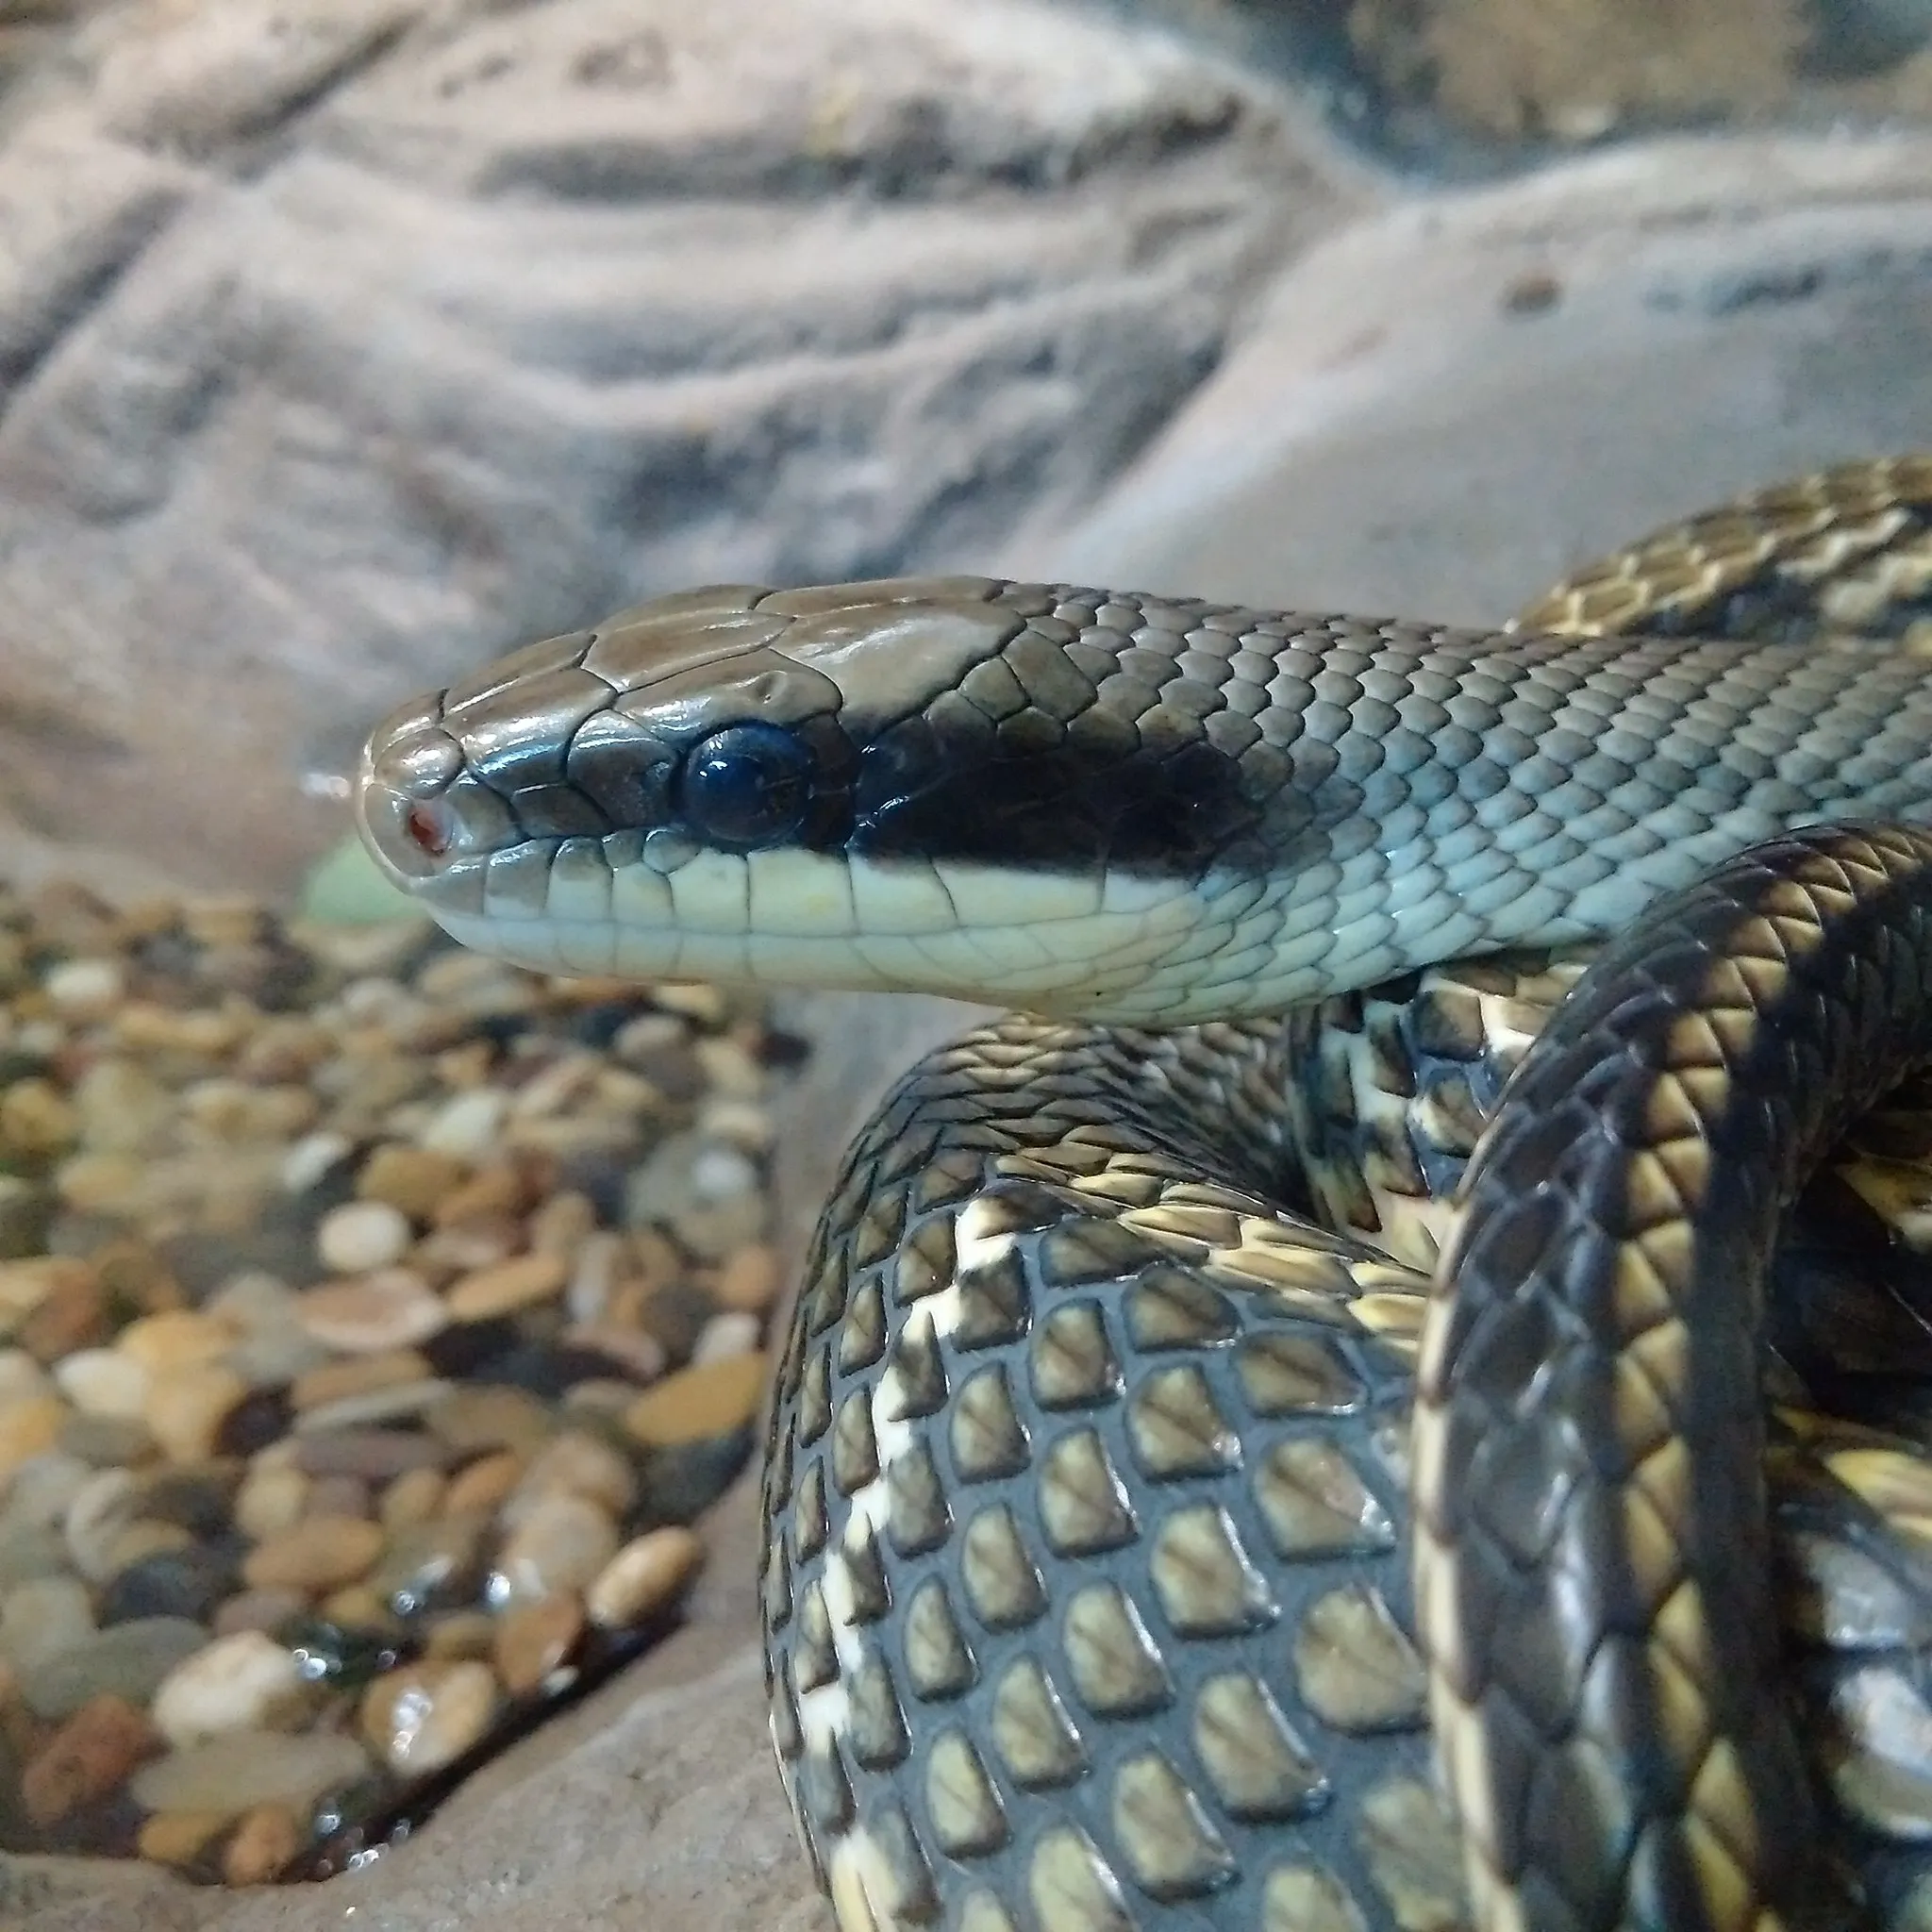 Blue Rat Snake/Blue Beauty Rat Snake